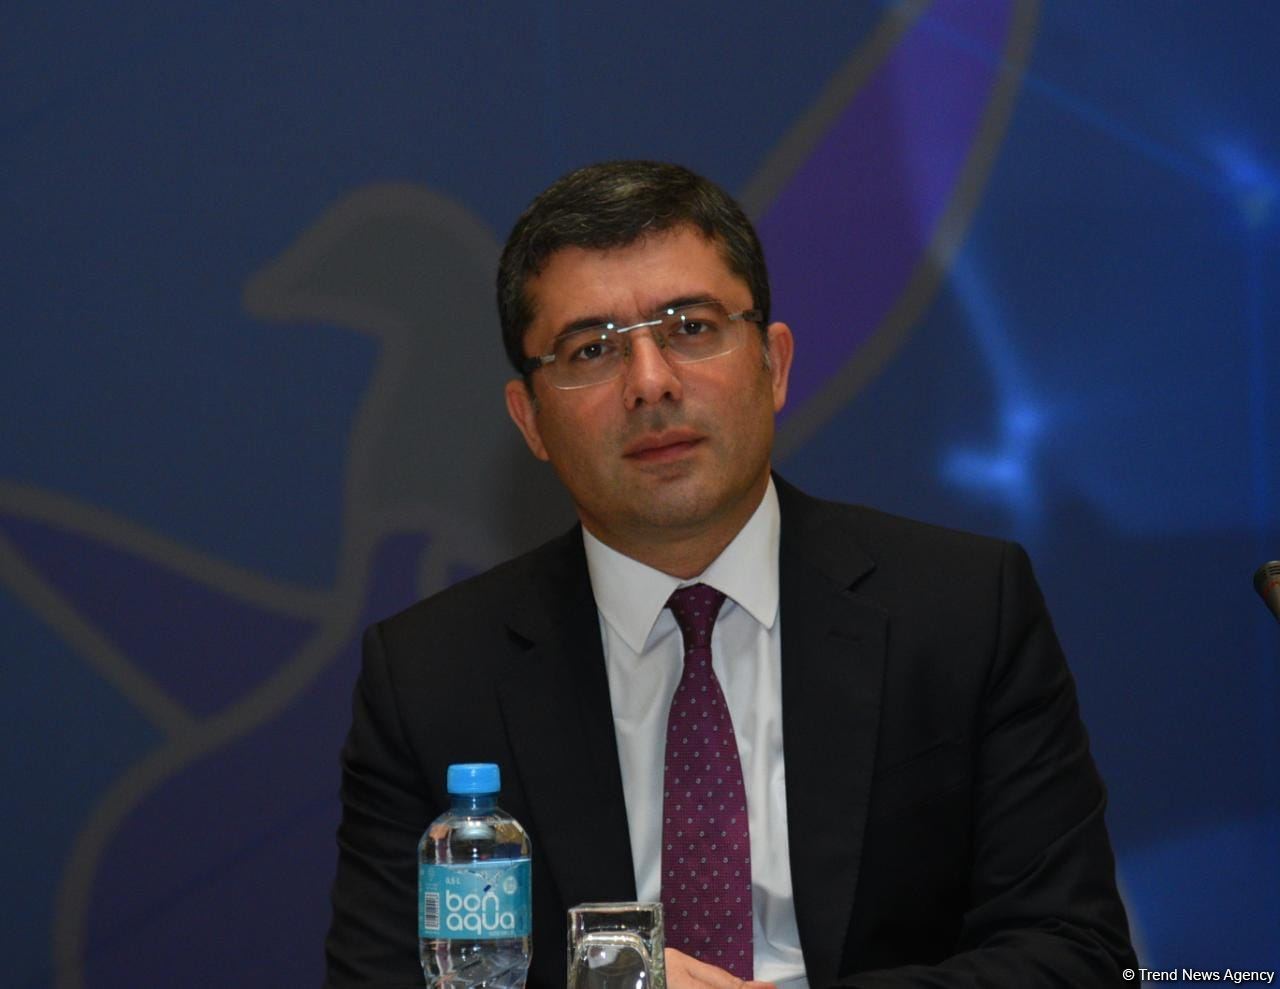 Связи между тюркскими странами будут укрепляться и в сфере медиа - Ахмед Исмайлов